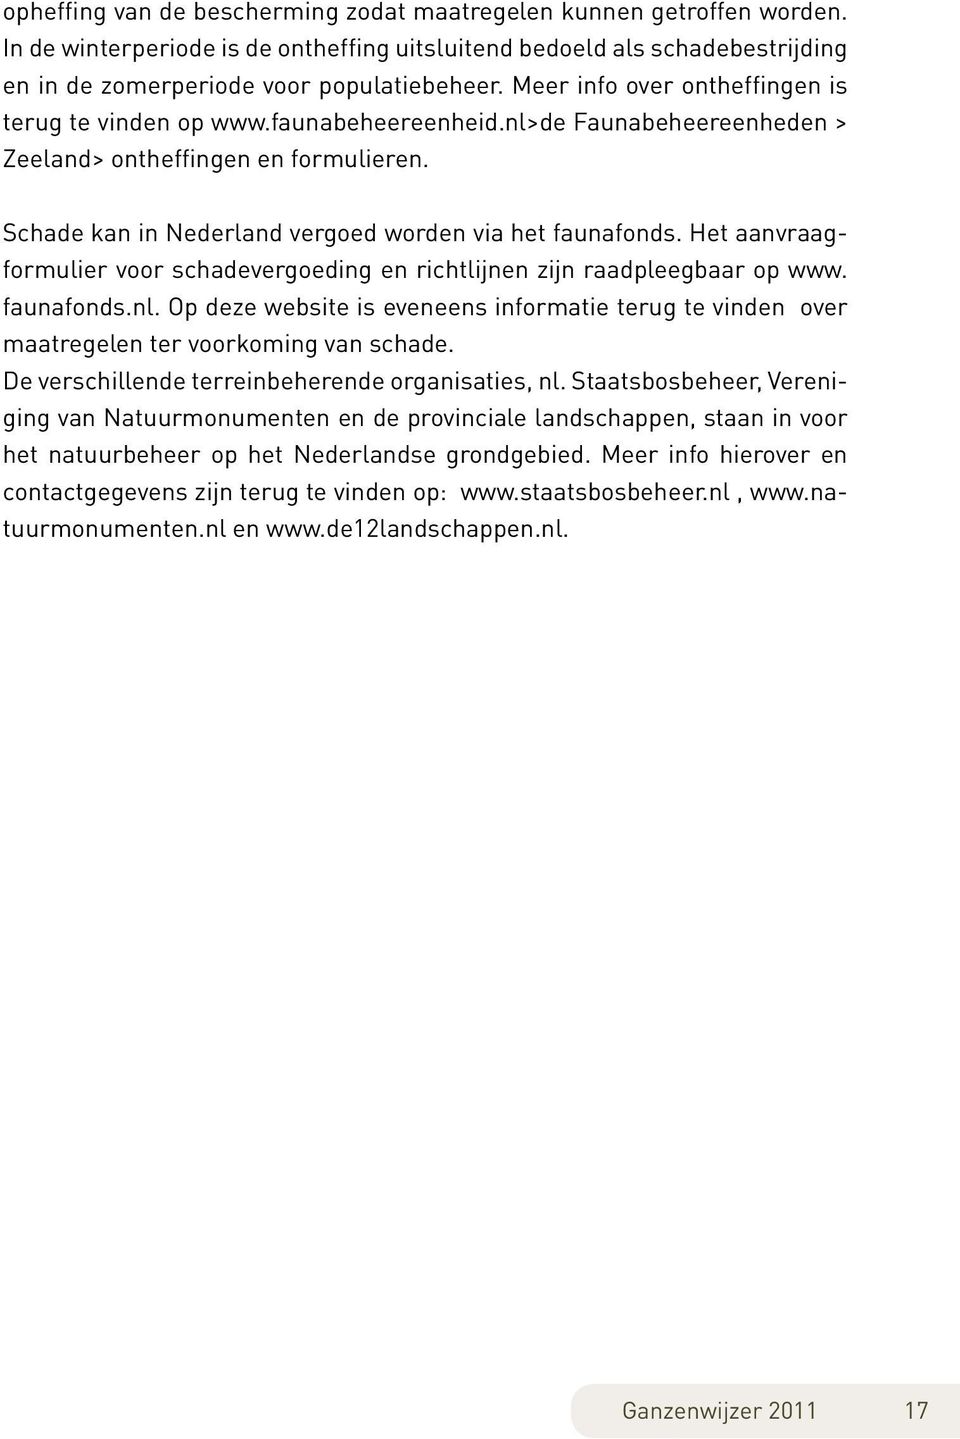 Het aanvraagformulier voor schadevergoeding en richtlijnen zijn raadpleegbaar op www. faunafonds.nl. Op deze website is eveneens informatie terug te vinden over maatregelen ter voorkoming van schade.